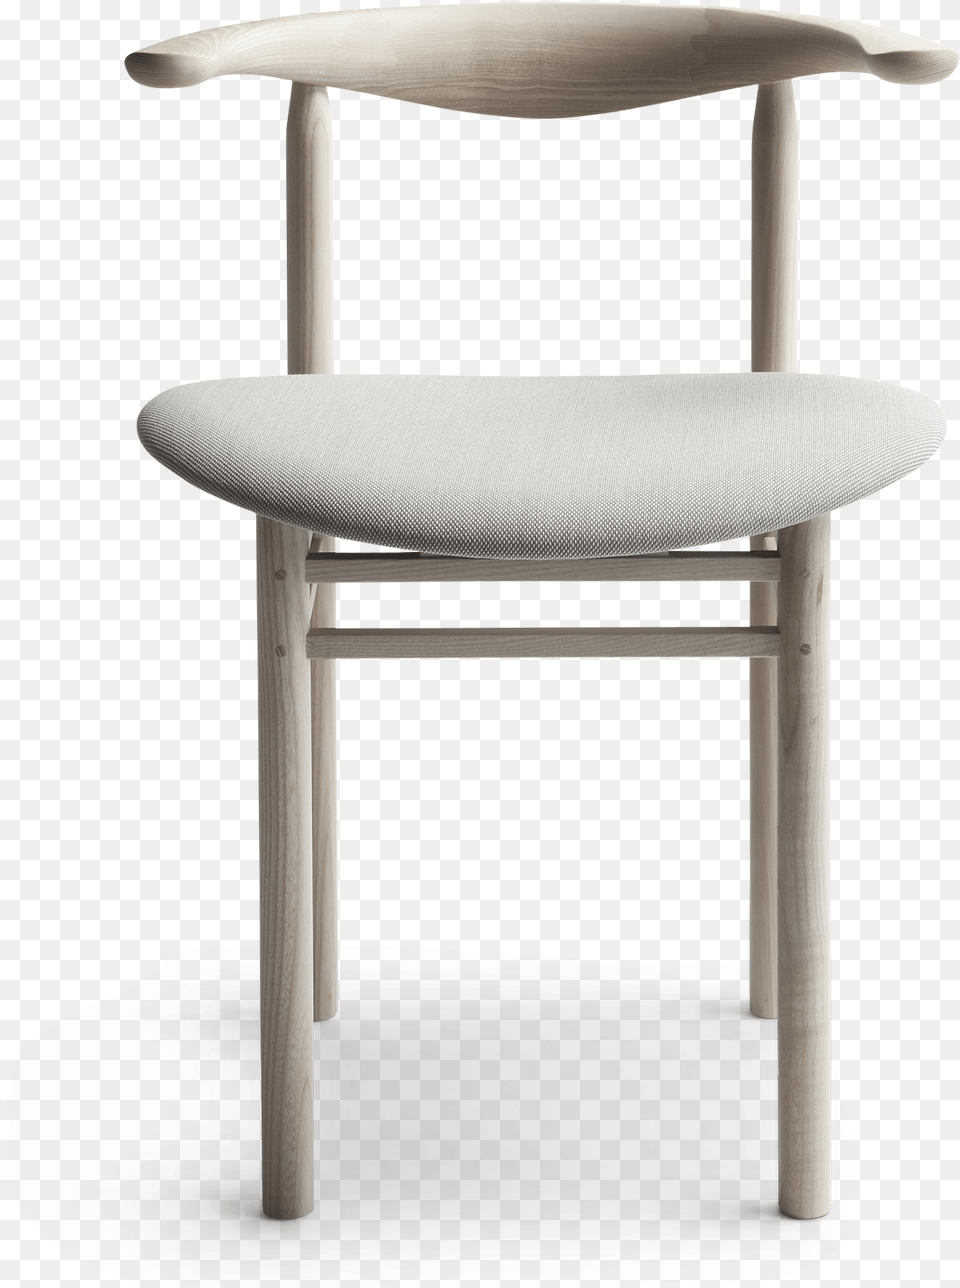 Linea Rmt3 Chair Chair, Furniture, Home Decor, Cushion, Mailbox Free Transparent Png